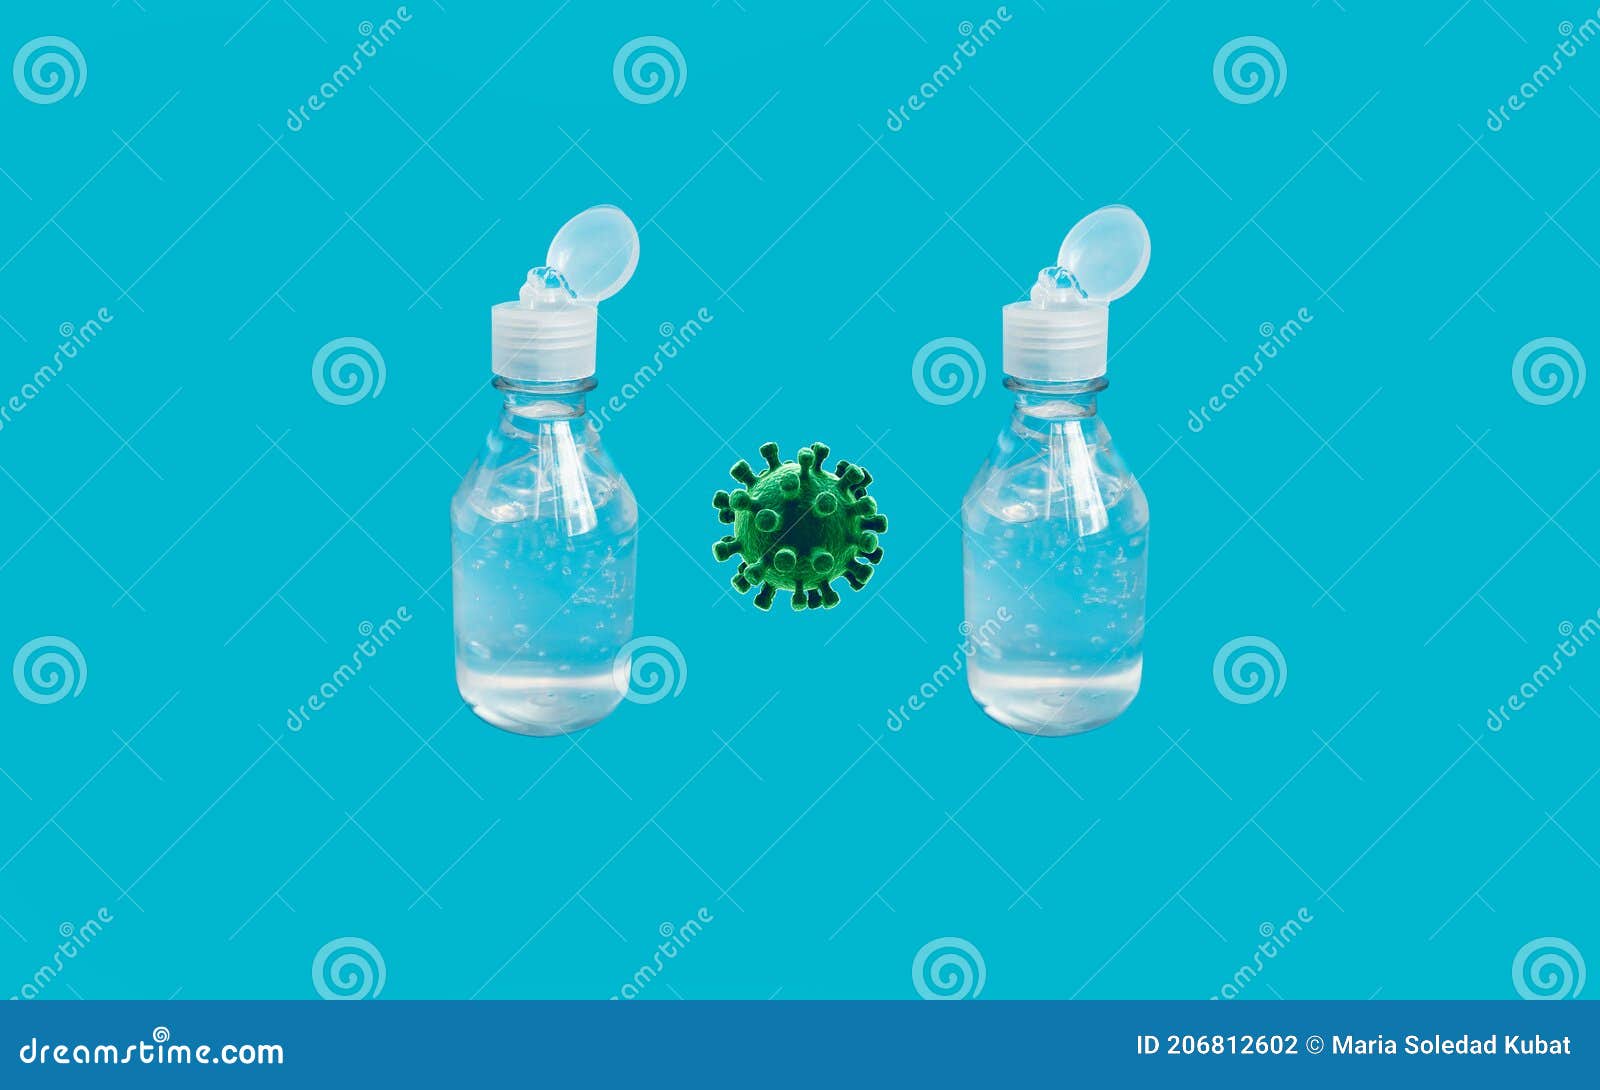 alcohol gel to avoid catching coronavirus